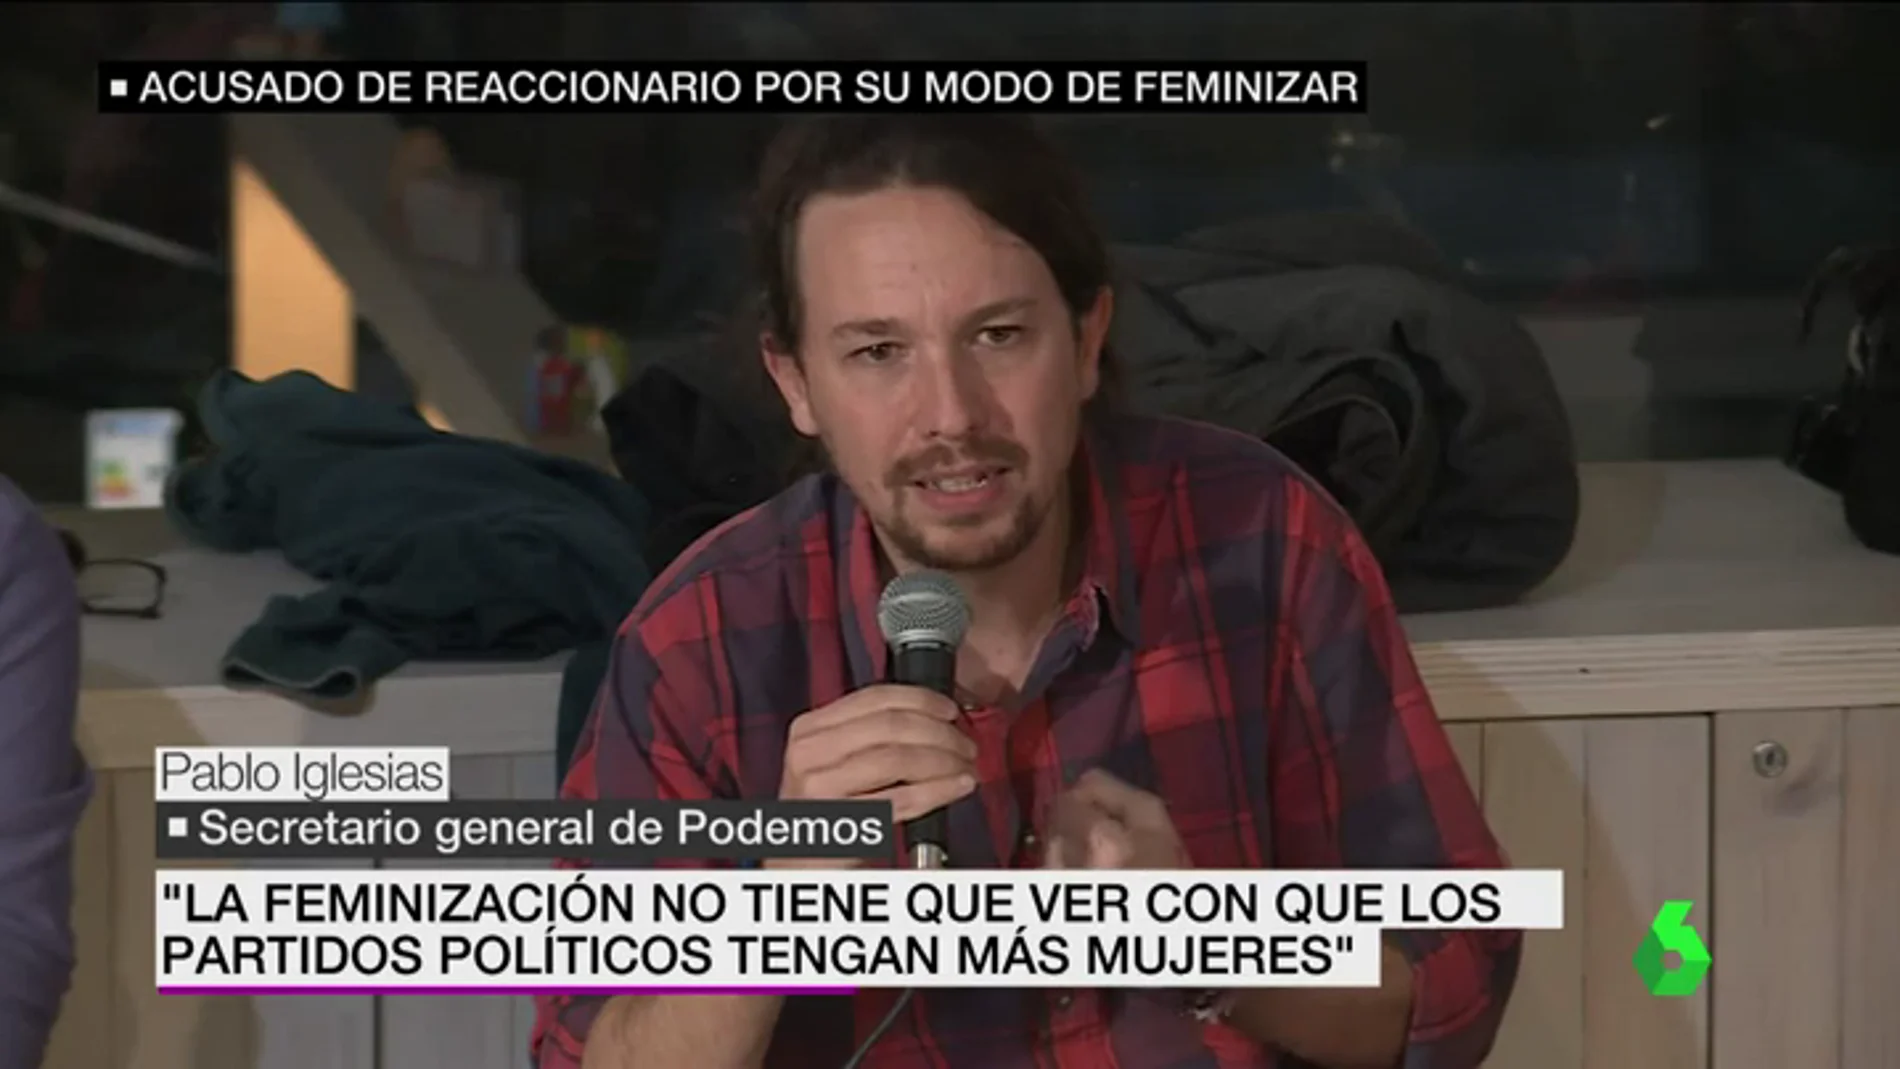 Frame 13.394525 de: Pablo Iglesias: "La feminización no tiene nada que ver con que los partidos tengan más mujeres"